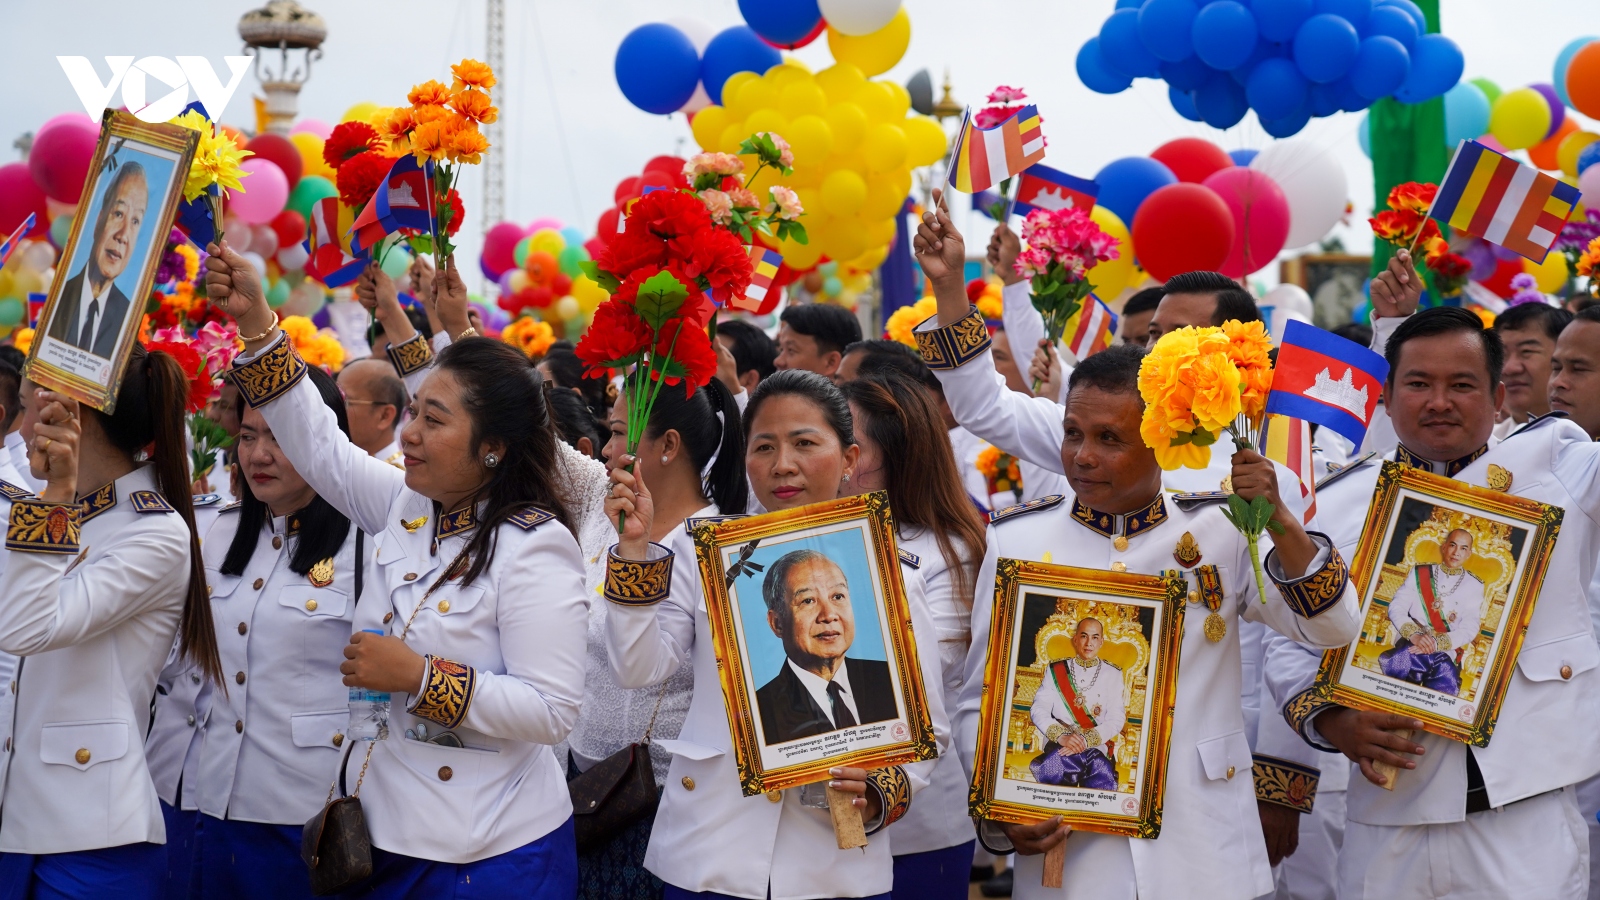 Lãnh đạo Việt Nam chúc mừng kỷ niệm 70 năm Ngày Độc lập Vương quốc Campuchia